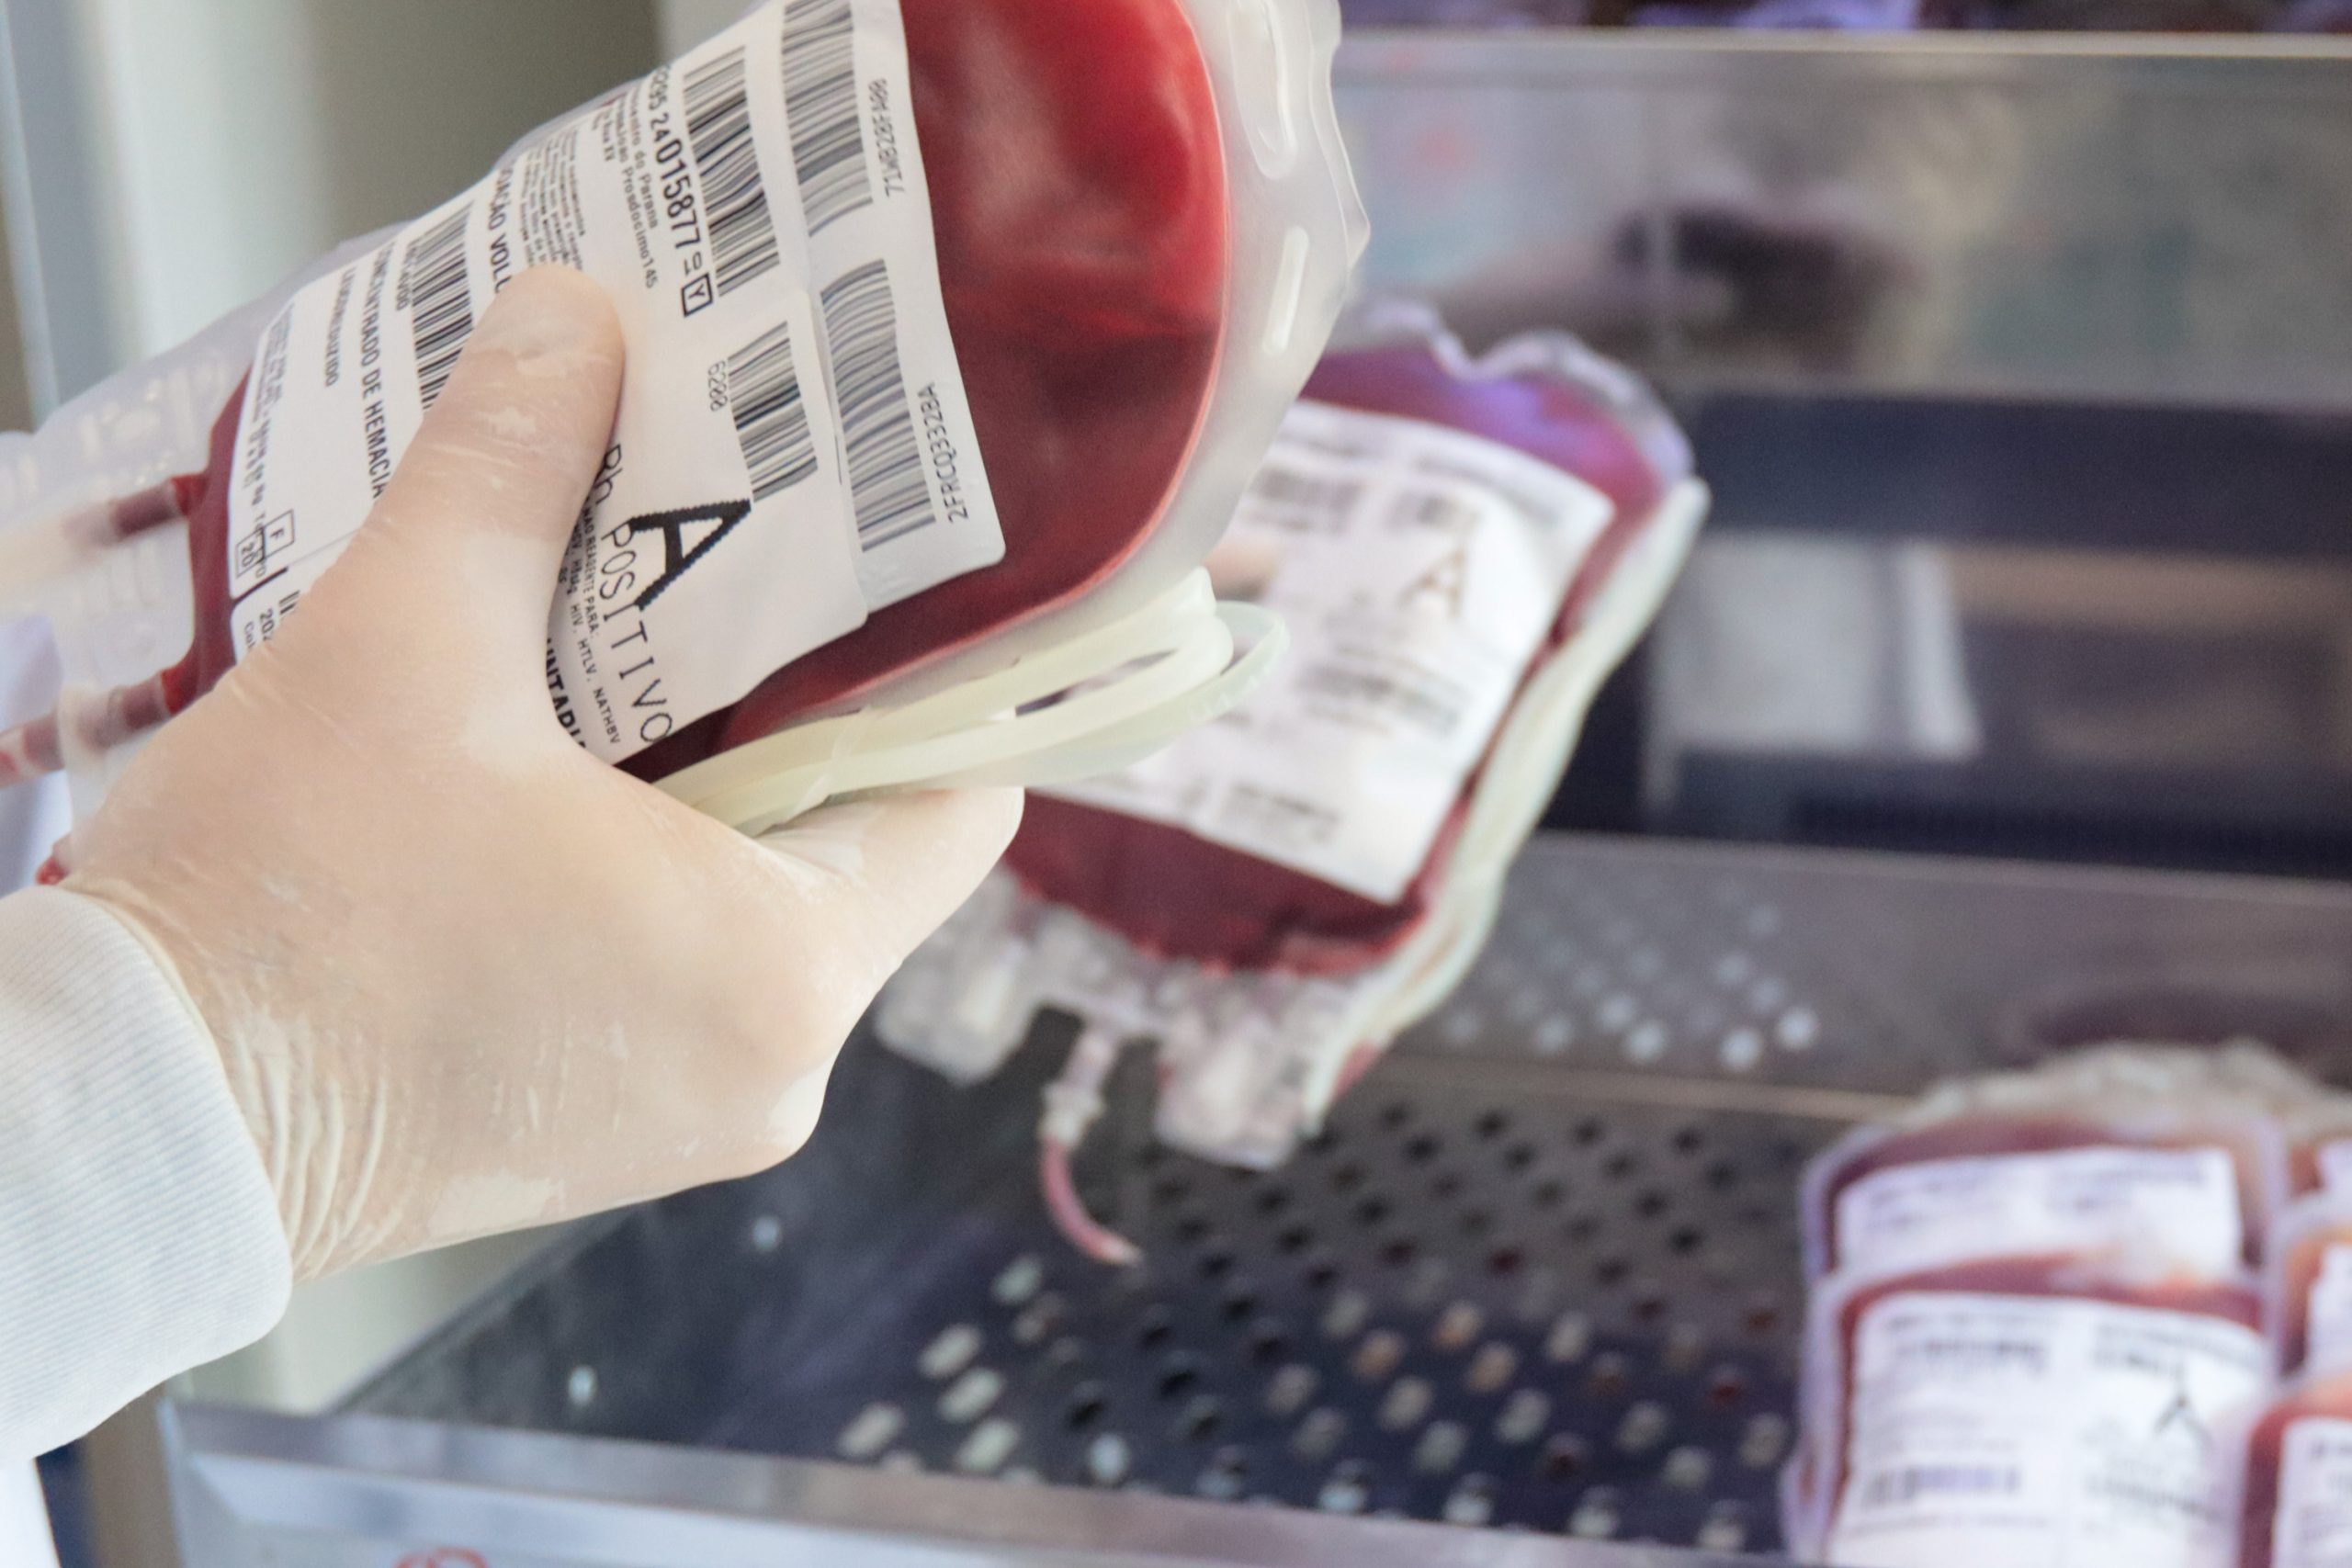 Paraná envia 300 bolsas de sangue para ajudar o sistema de saúde do Rio Grande do Sul